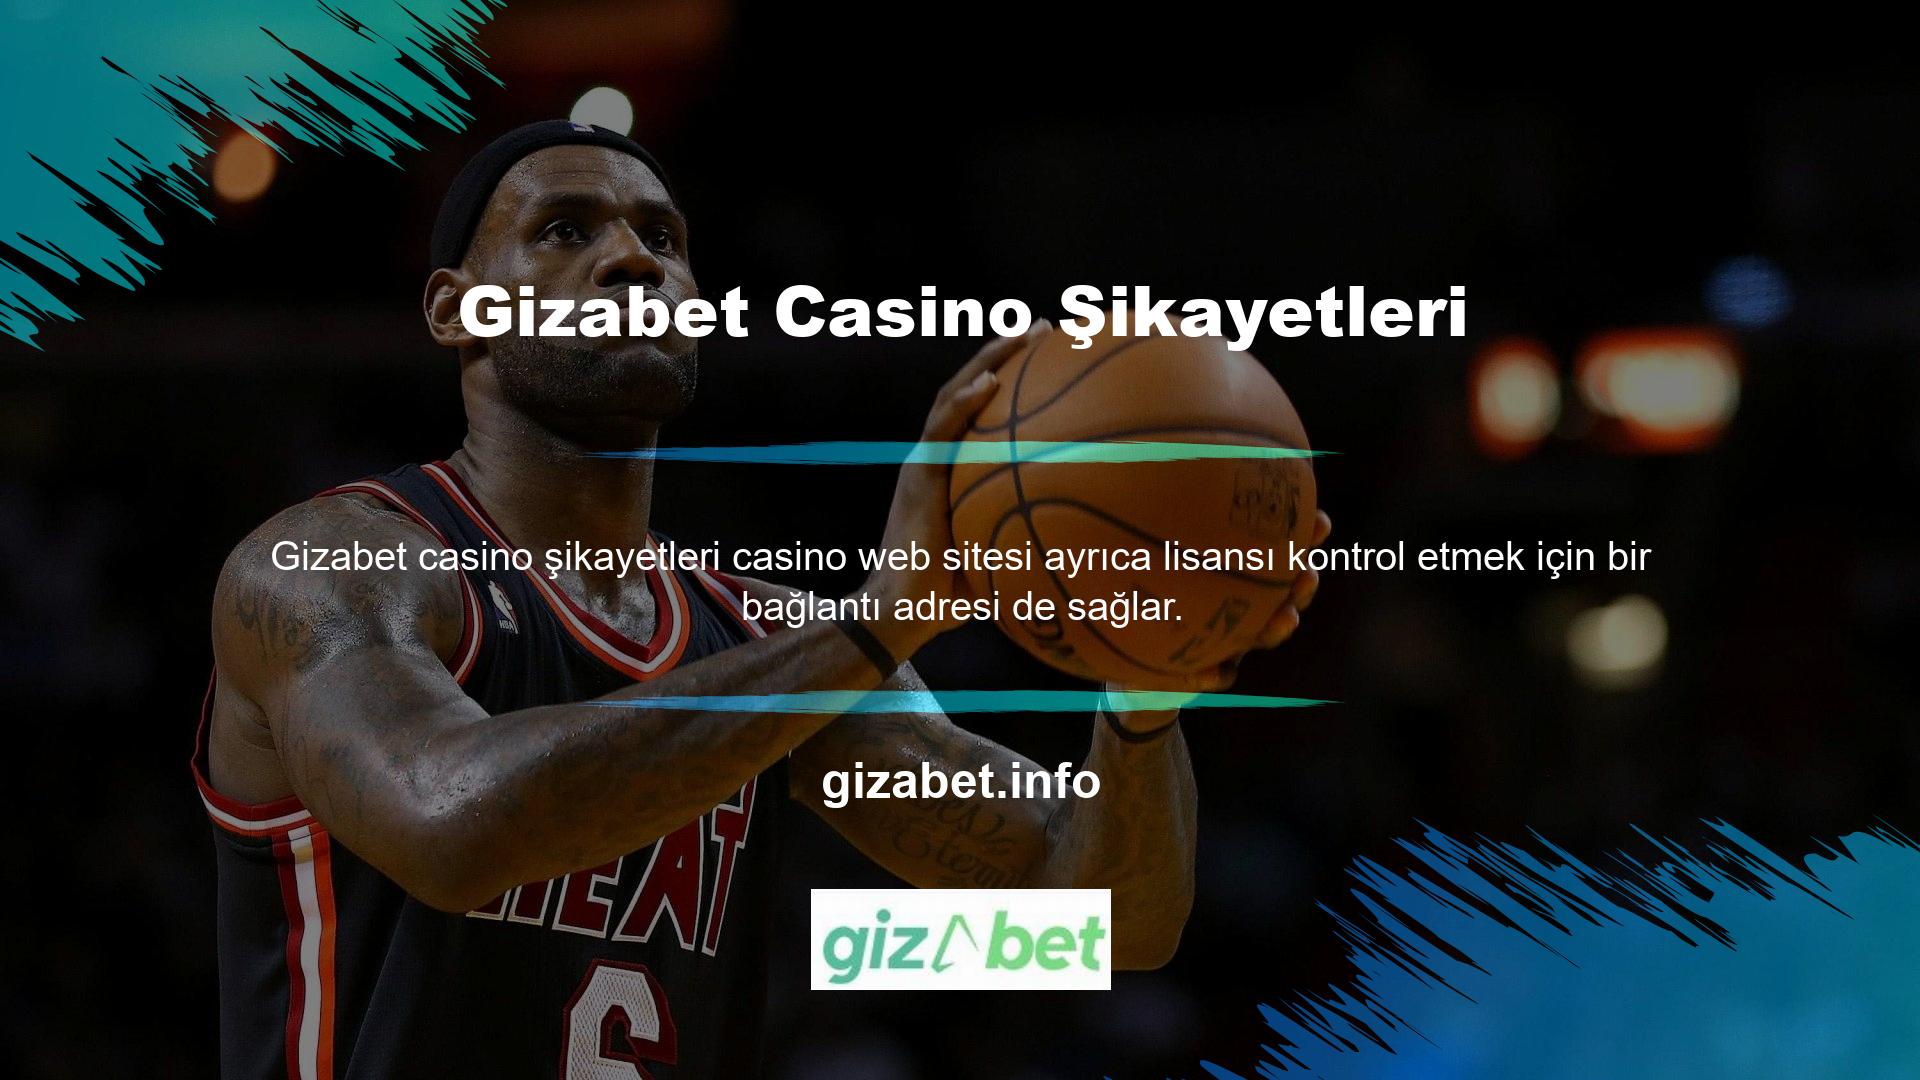 Gizabet Casino Şikayet Sitesine üye olmak için sitenin ana sayfasında yer alan butona tıklayarak üyelik işlemini tamamlayabilirsiniz